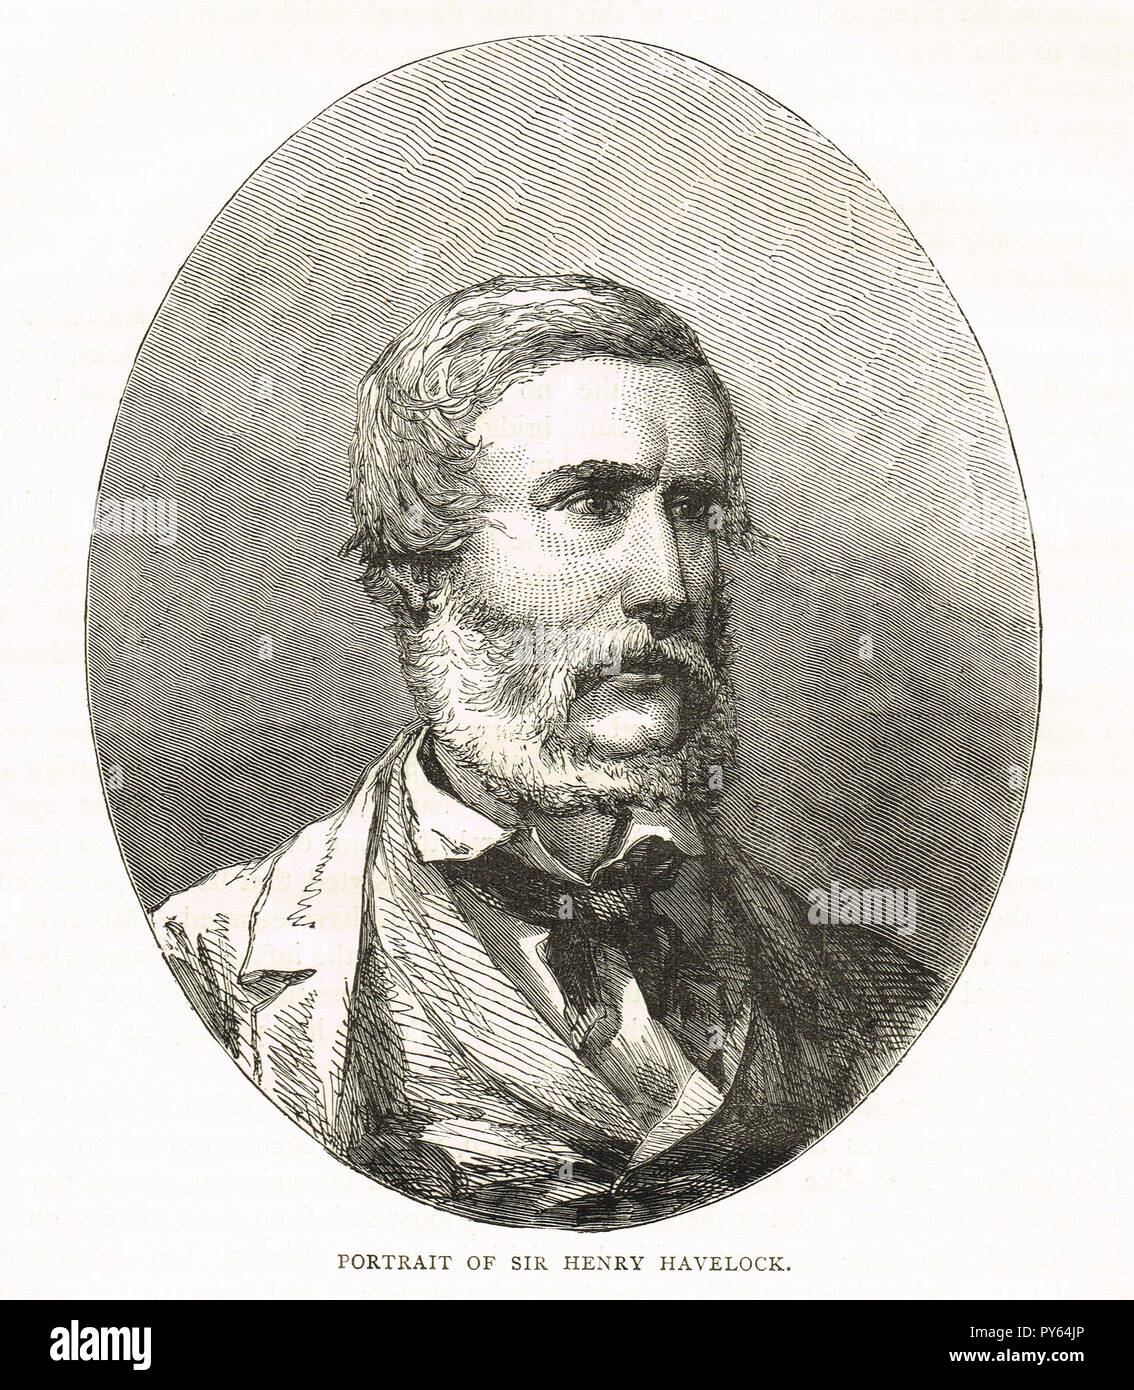 Major General Sir Henry Havelock. Britischer General, insbesondere mit Indien verbunden, zurückerobert Cawnpore während des indischen Aufstands von 1857 Stockfoto